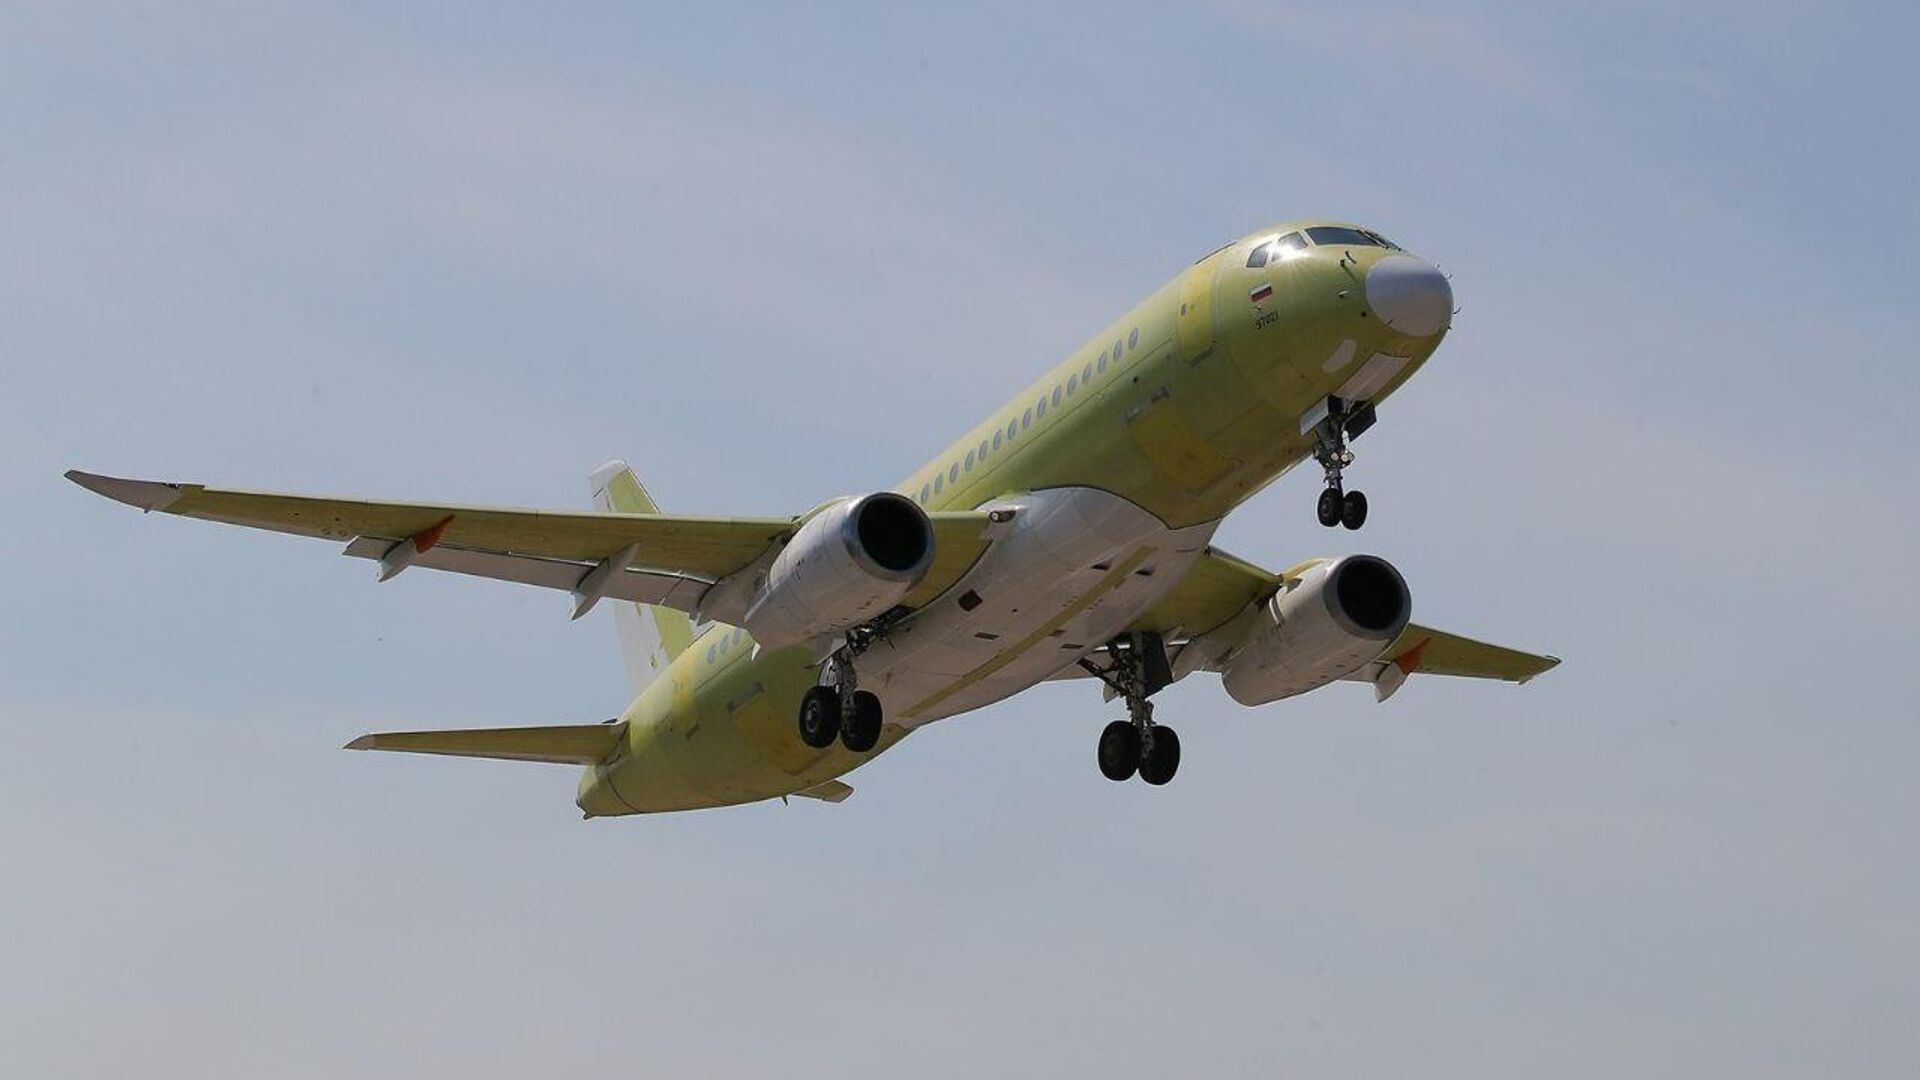 Кузбасс ведет переговоры об открытии международных рейсов с перевозчиками из Азии